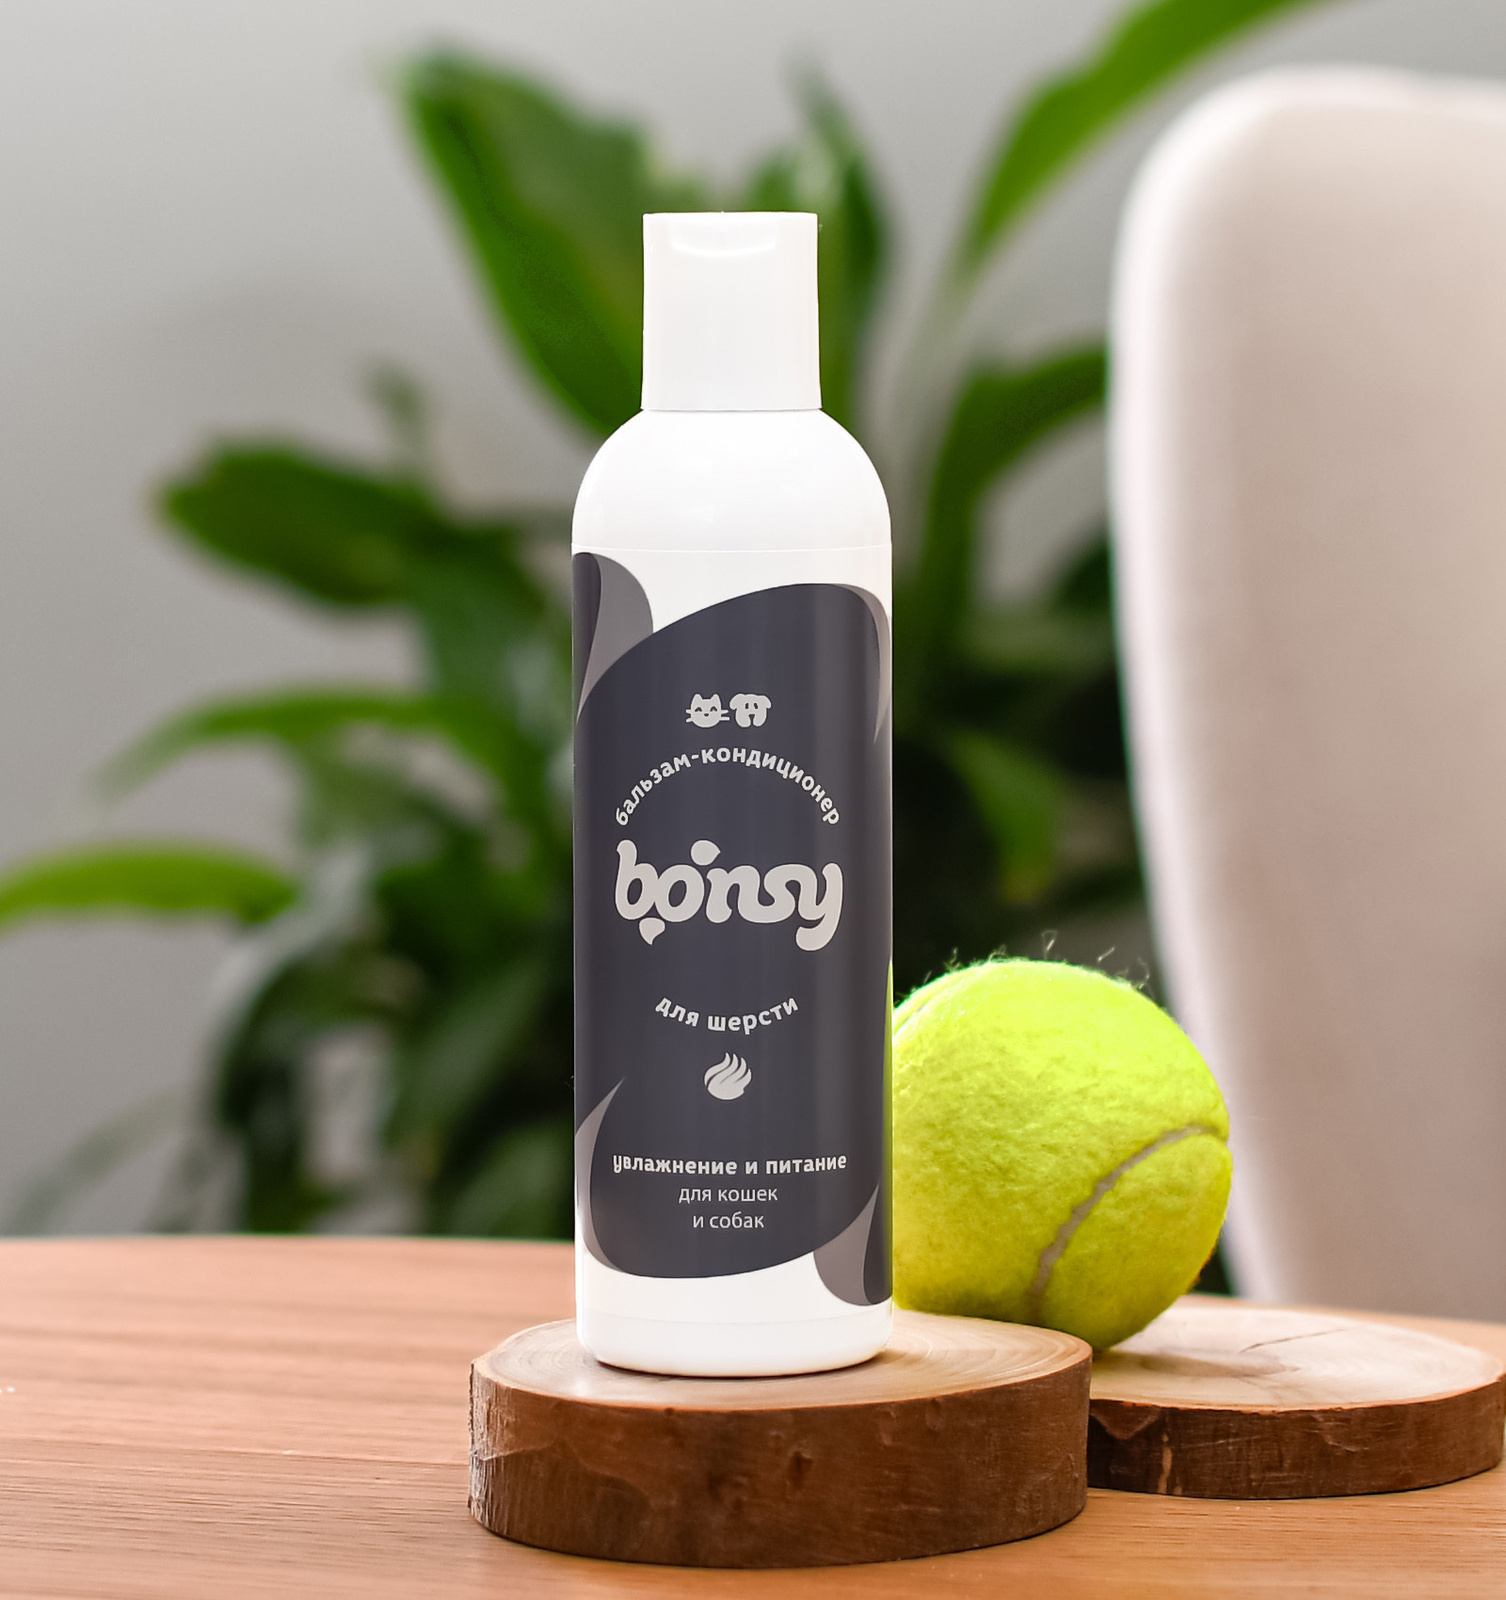 Bonsy Bonsy бальзам-кондиционер увлажнение и питание для кошек и собак (250 мл) bonsy bonsy шампунь с хлоргексидином для профилактики кожных заболеваний у собак и кошек 250 г